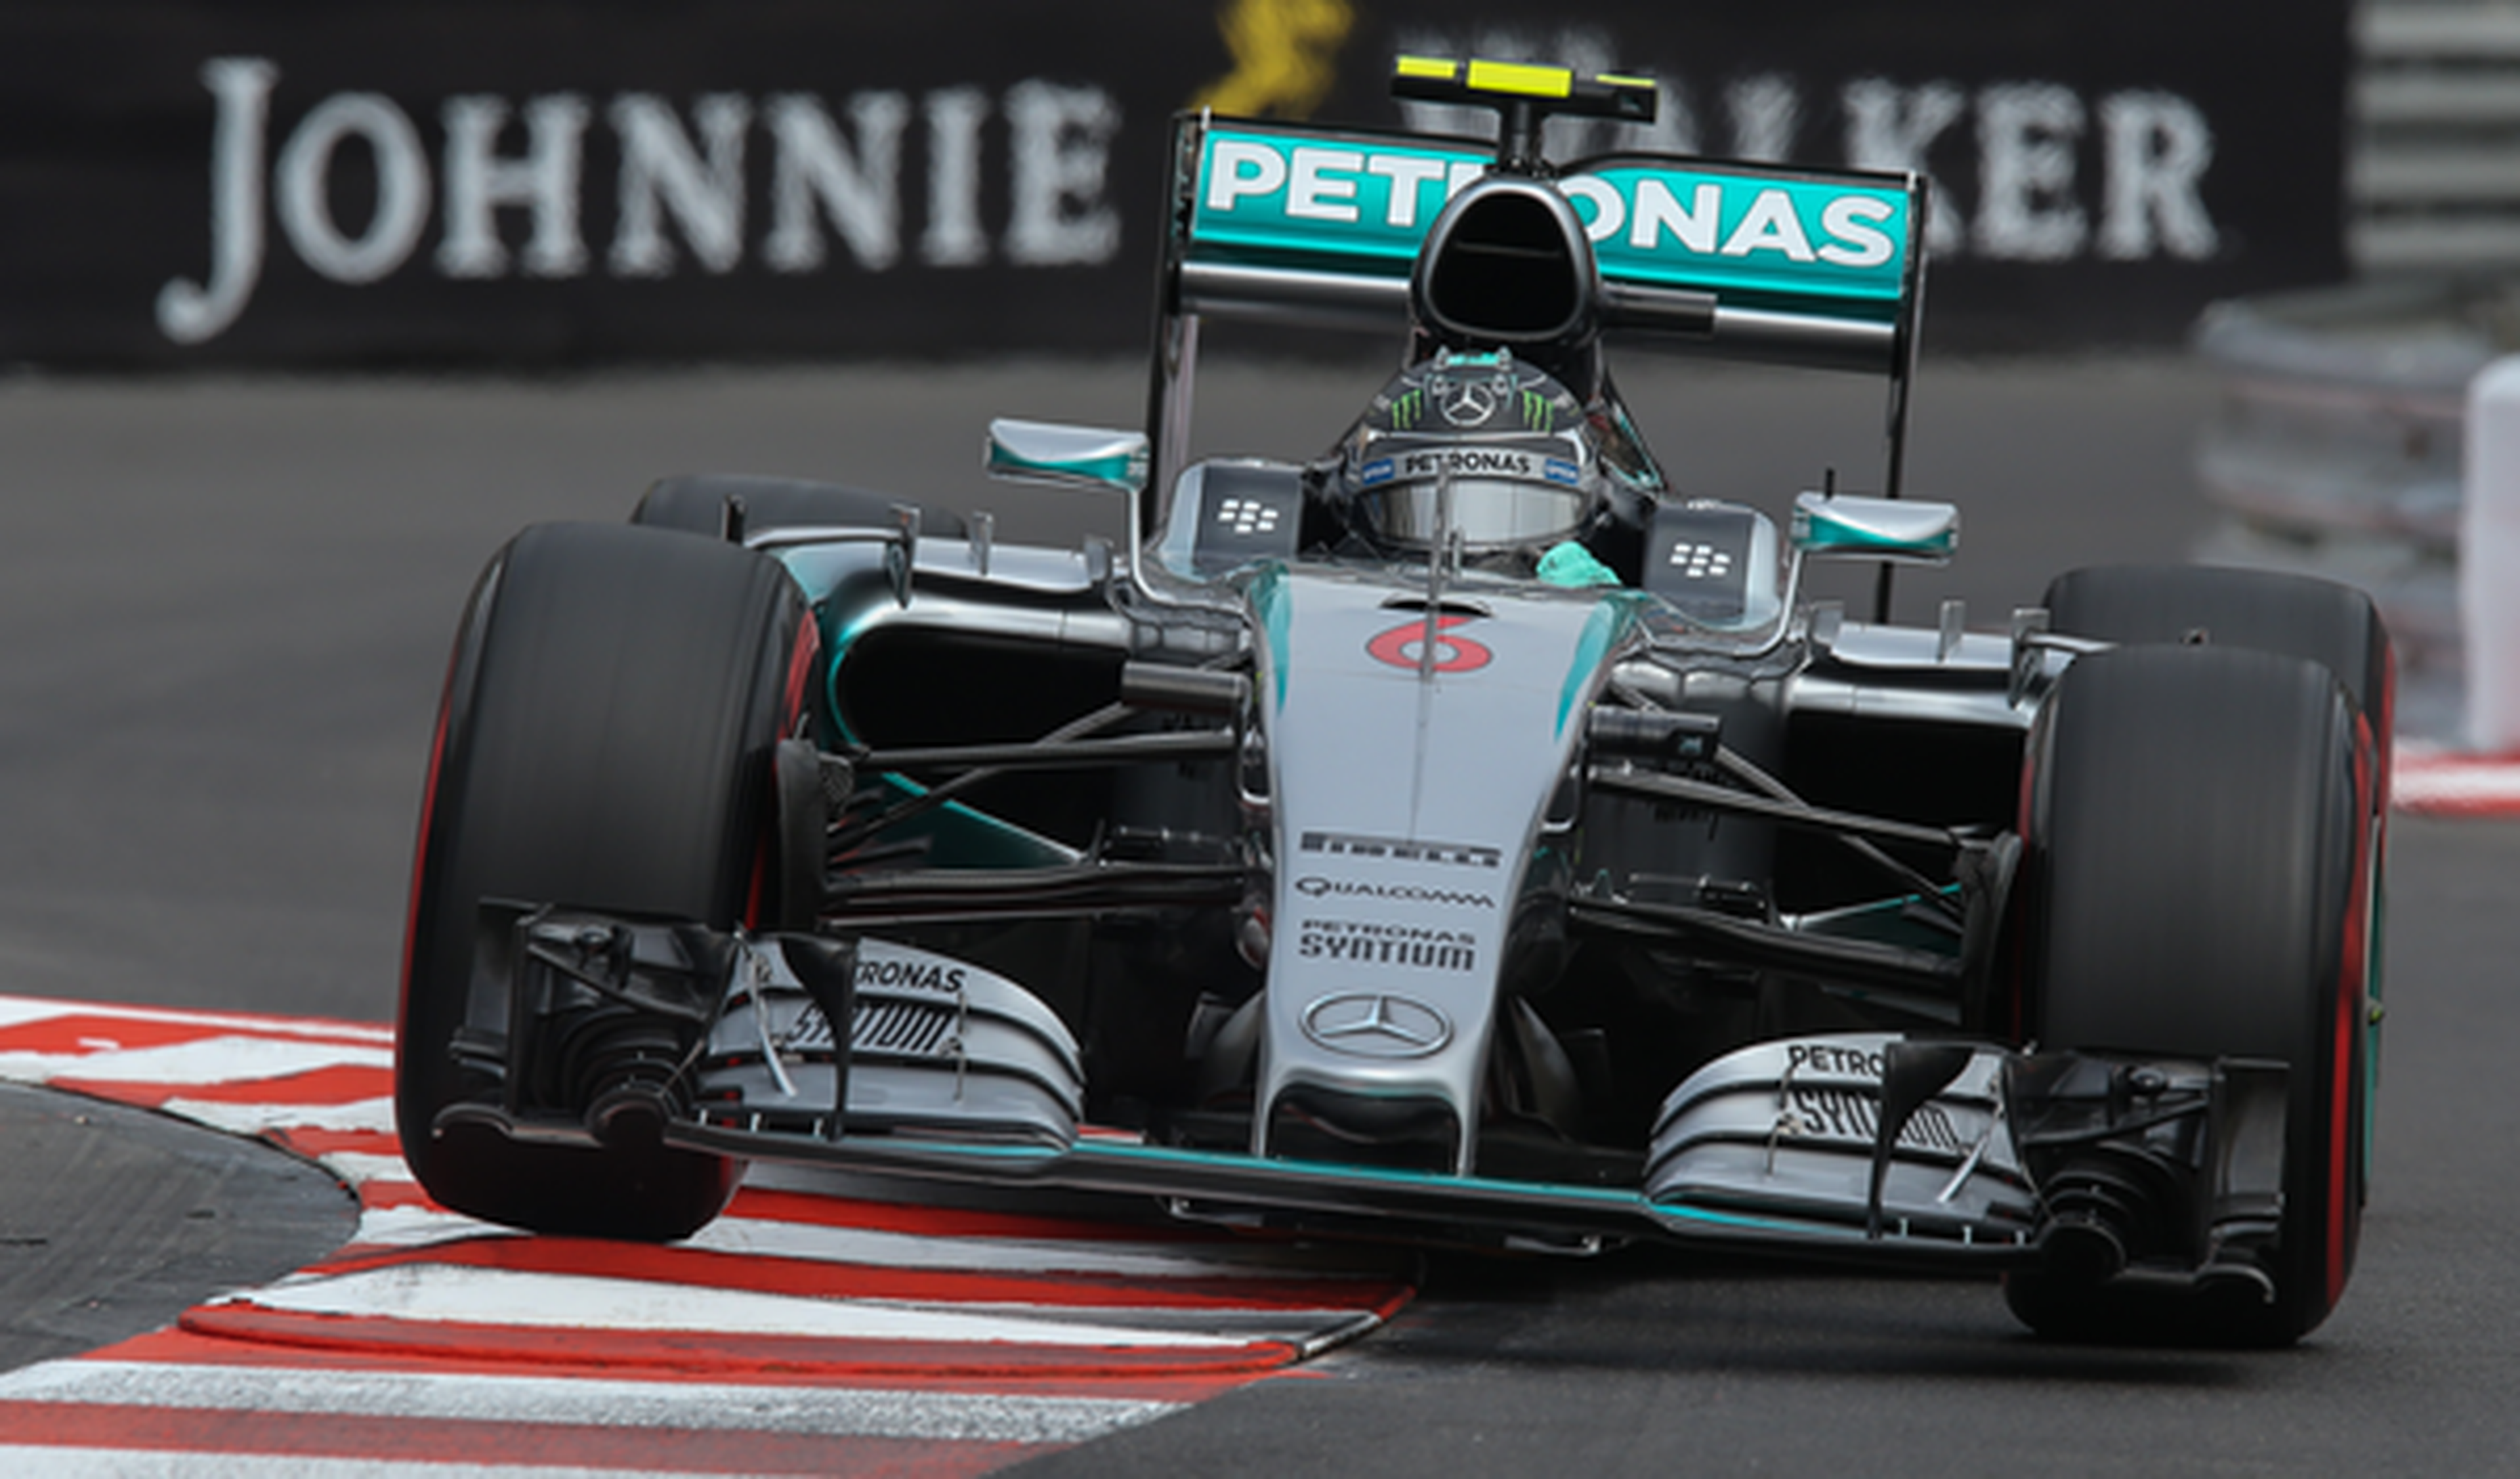 F1.Carrera del GP Mónaco 2015: Victoria sorpresa de Rosberg